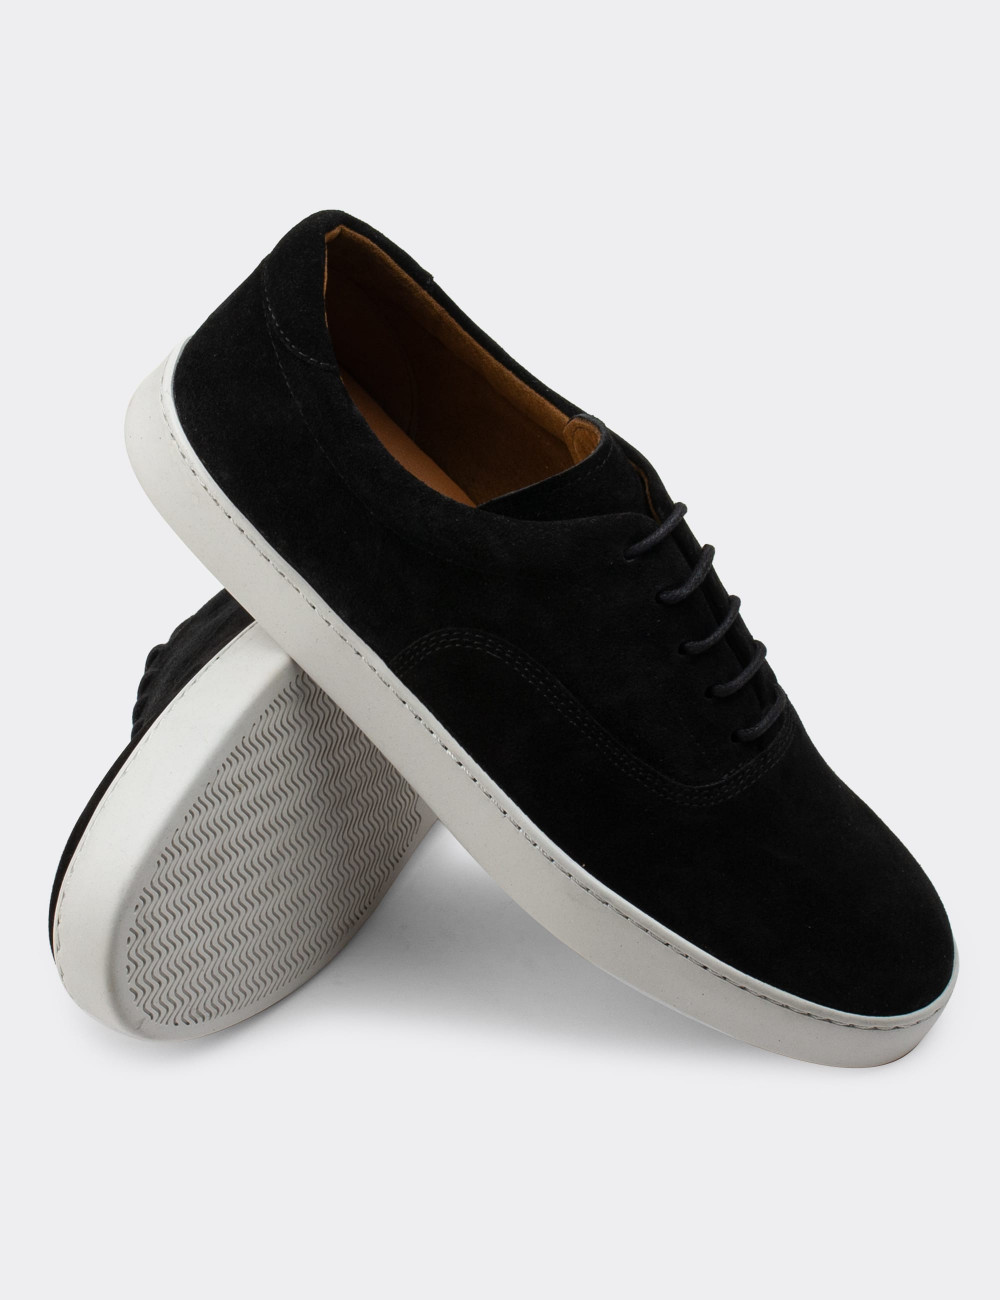 Hakiki Süet Siyah Sneaker Erkek Ayakkabı - 01867MSYHC01